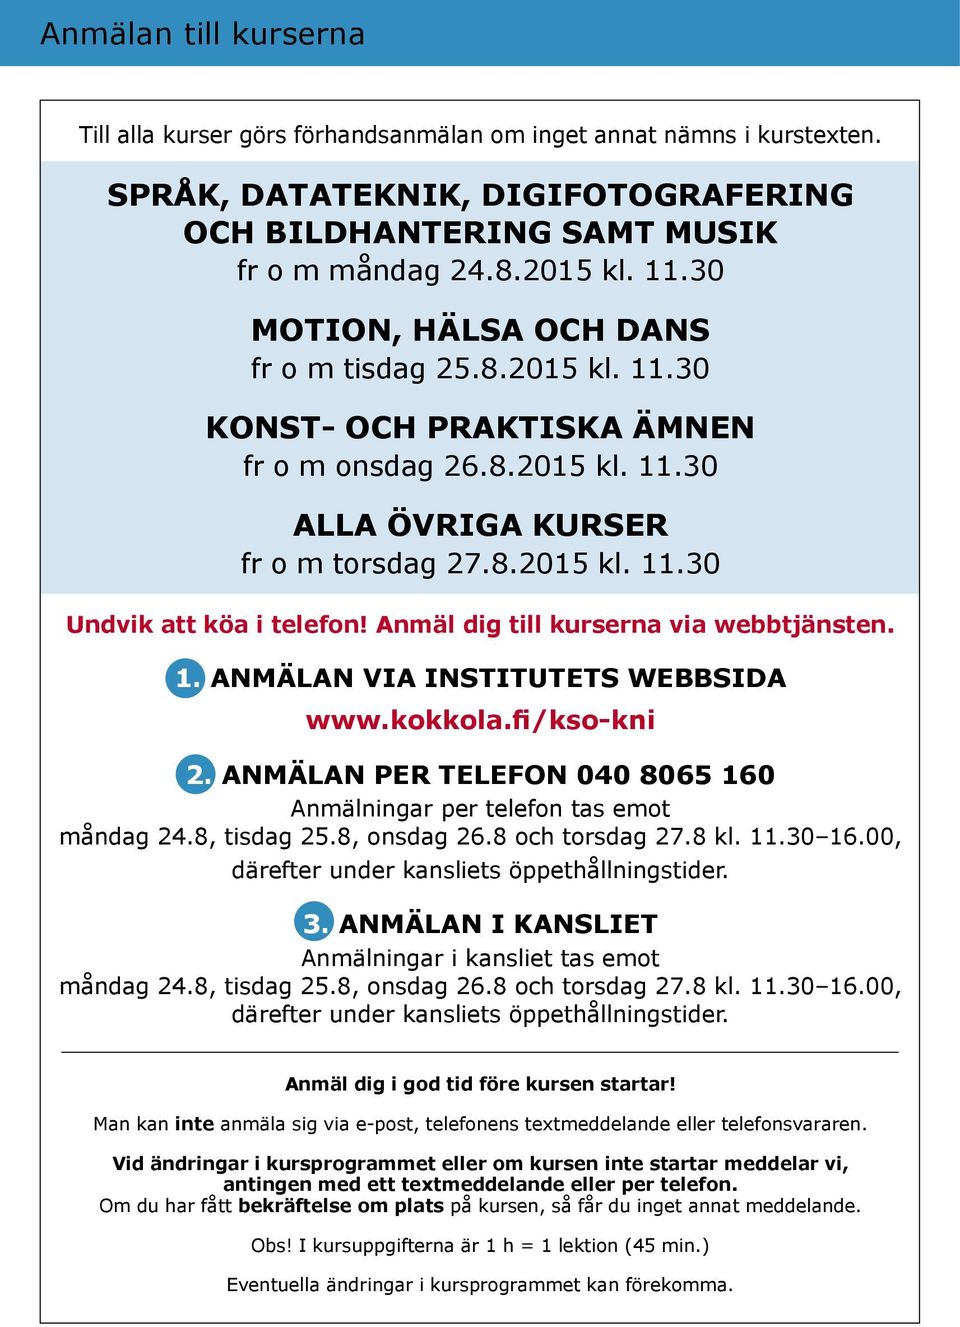 Anmäl dig till kurserna via webbtjänsten. 1. ANMÄLAN VIA institutets webbsida www.kokkola.fi/kso-kni 2. ANMÄLAN PER TELEFON 040 8065 160 Anmälningar per telefon tas emot måndag 24.8, tisdag 25.